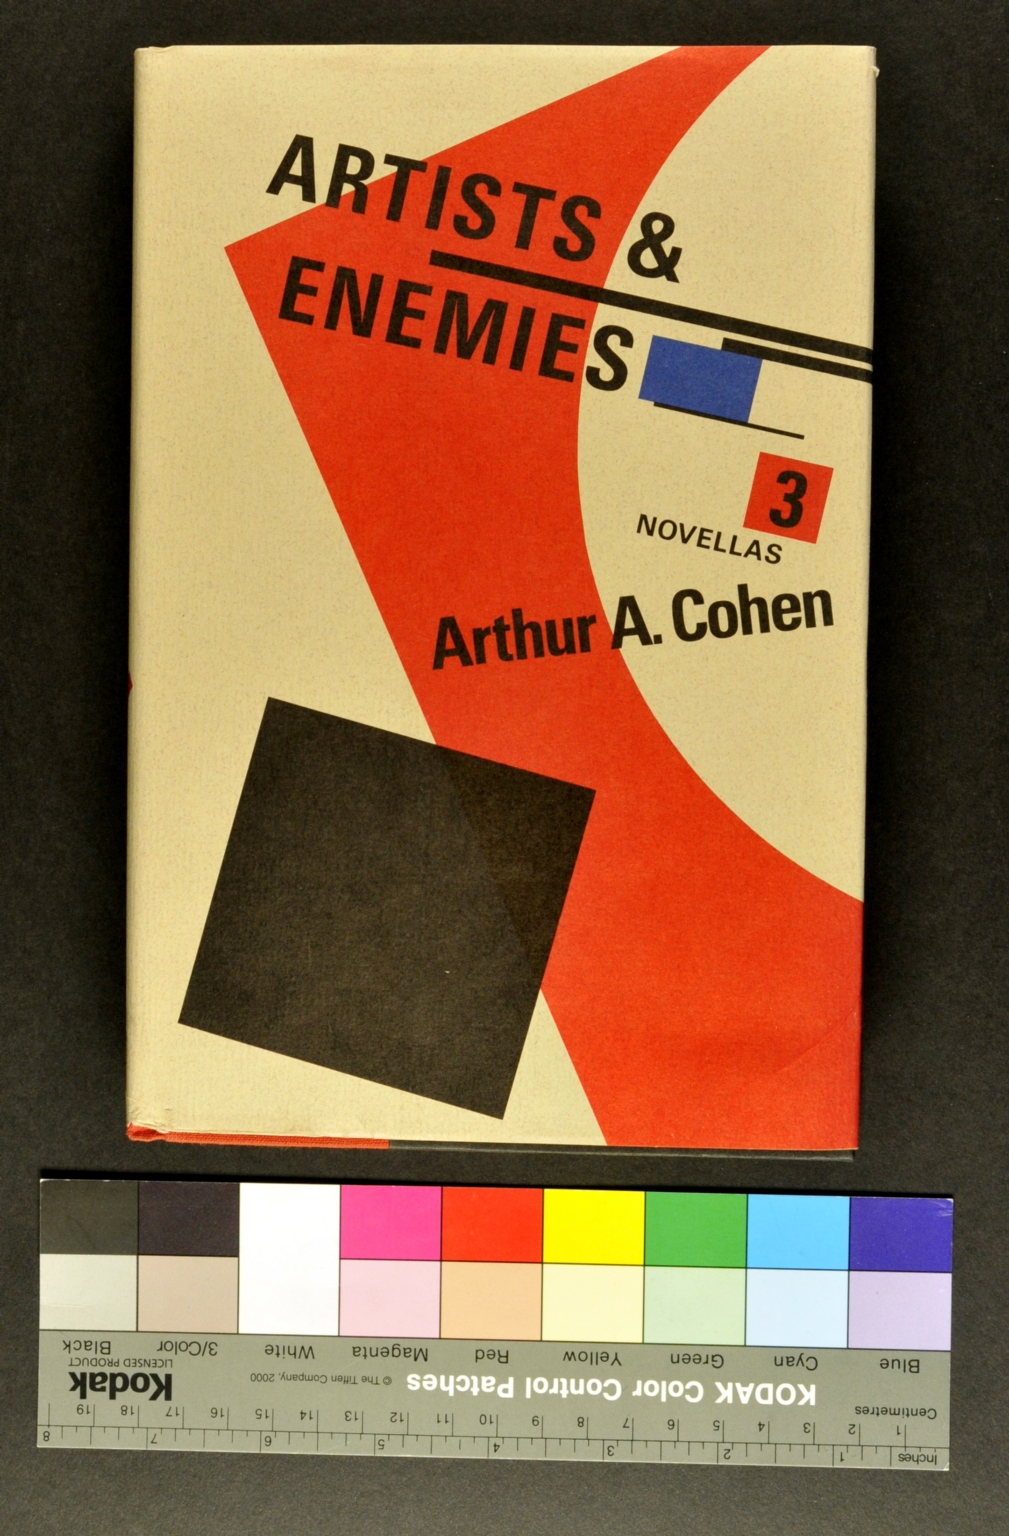 Artists & Enemies